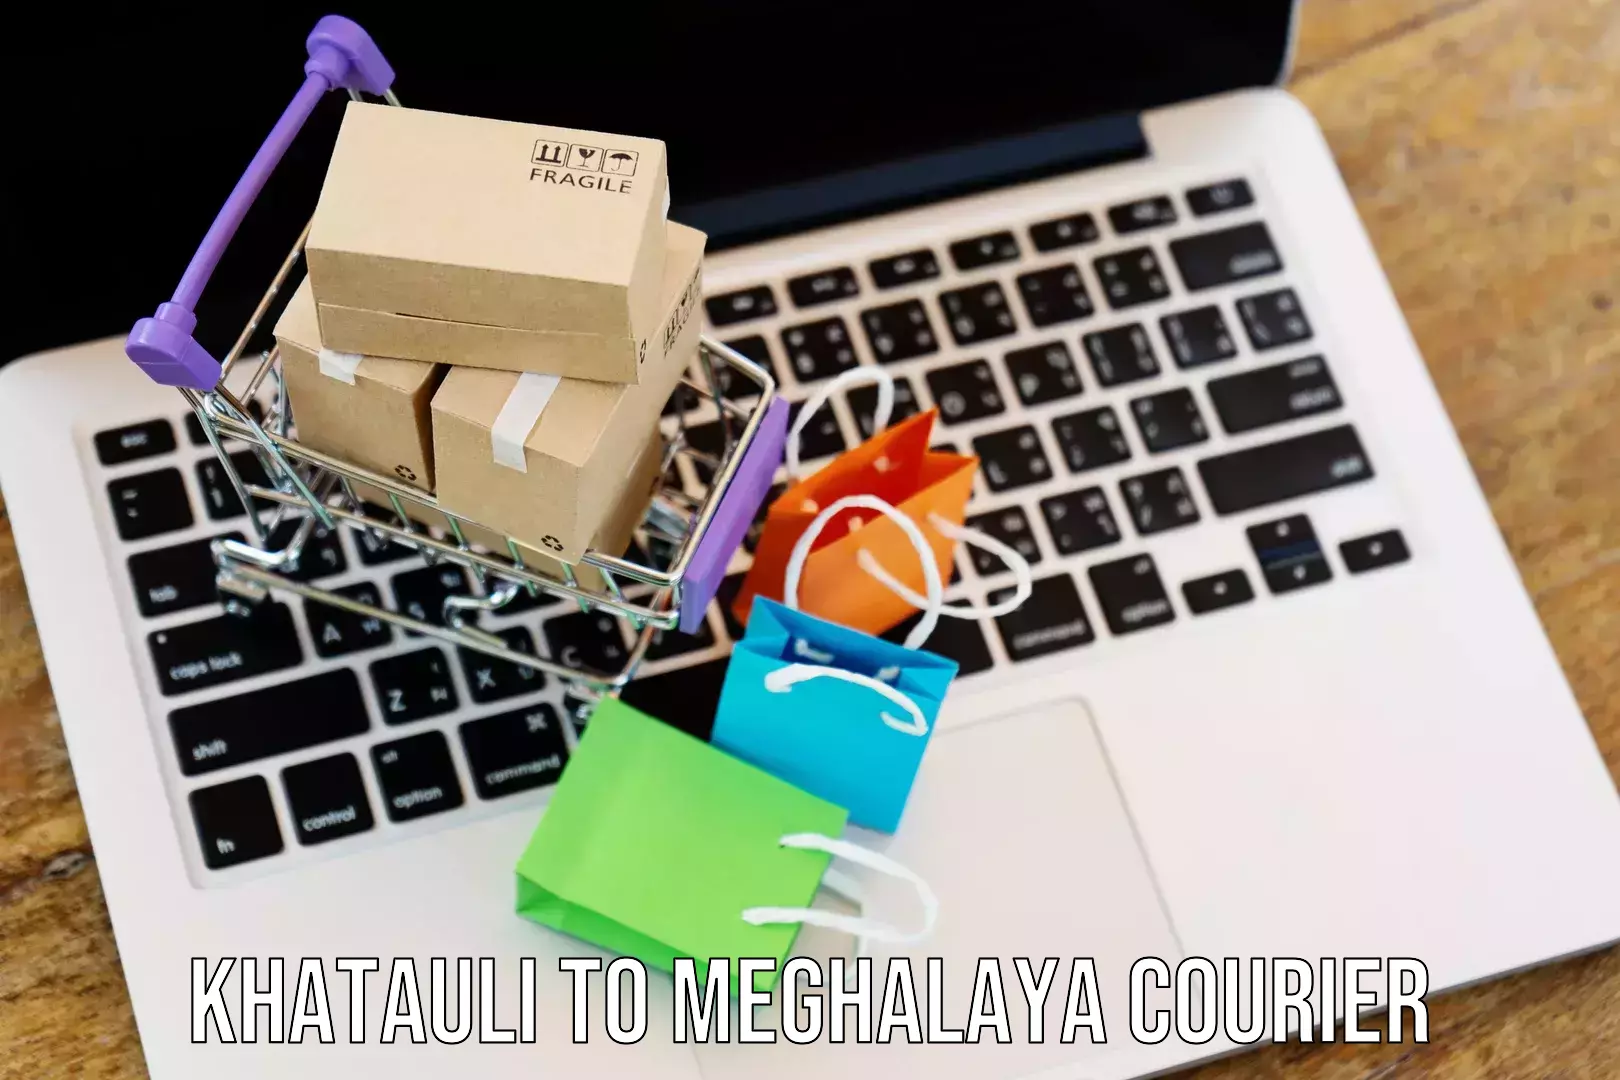 Sustainable delivery practices Khatauli to Meghalaya